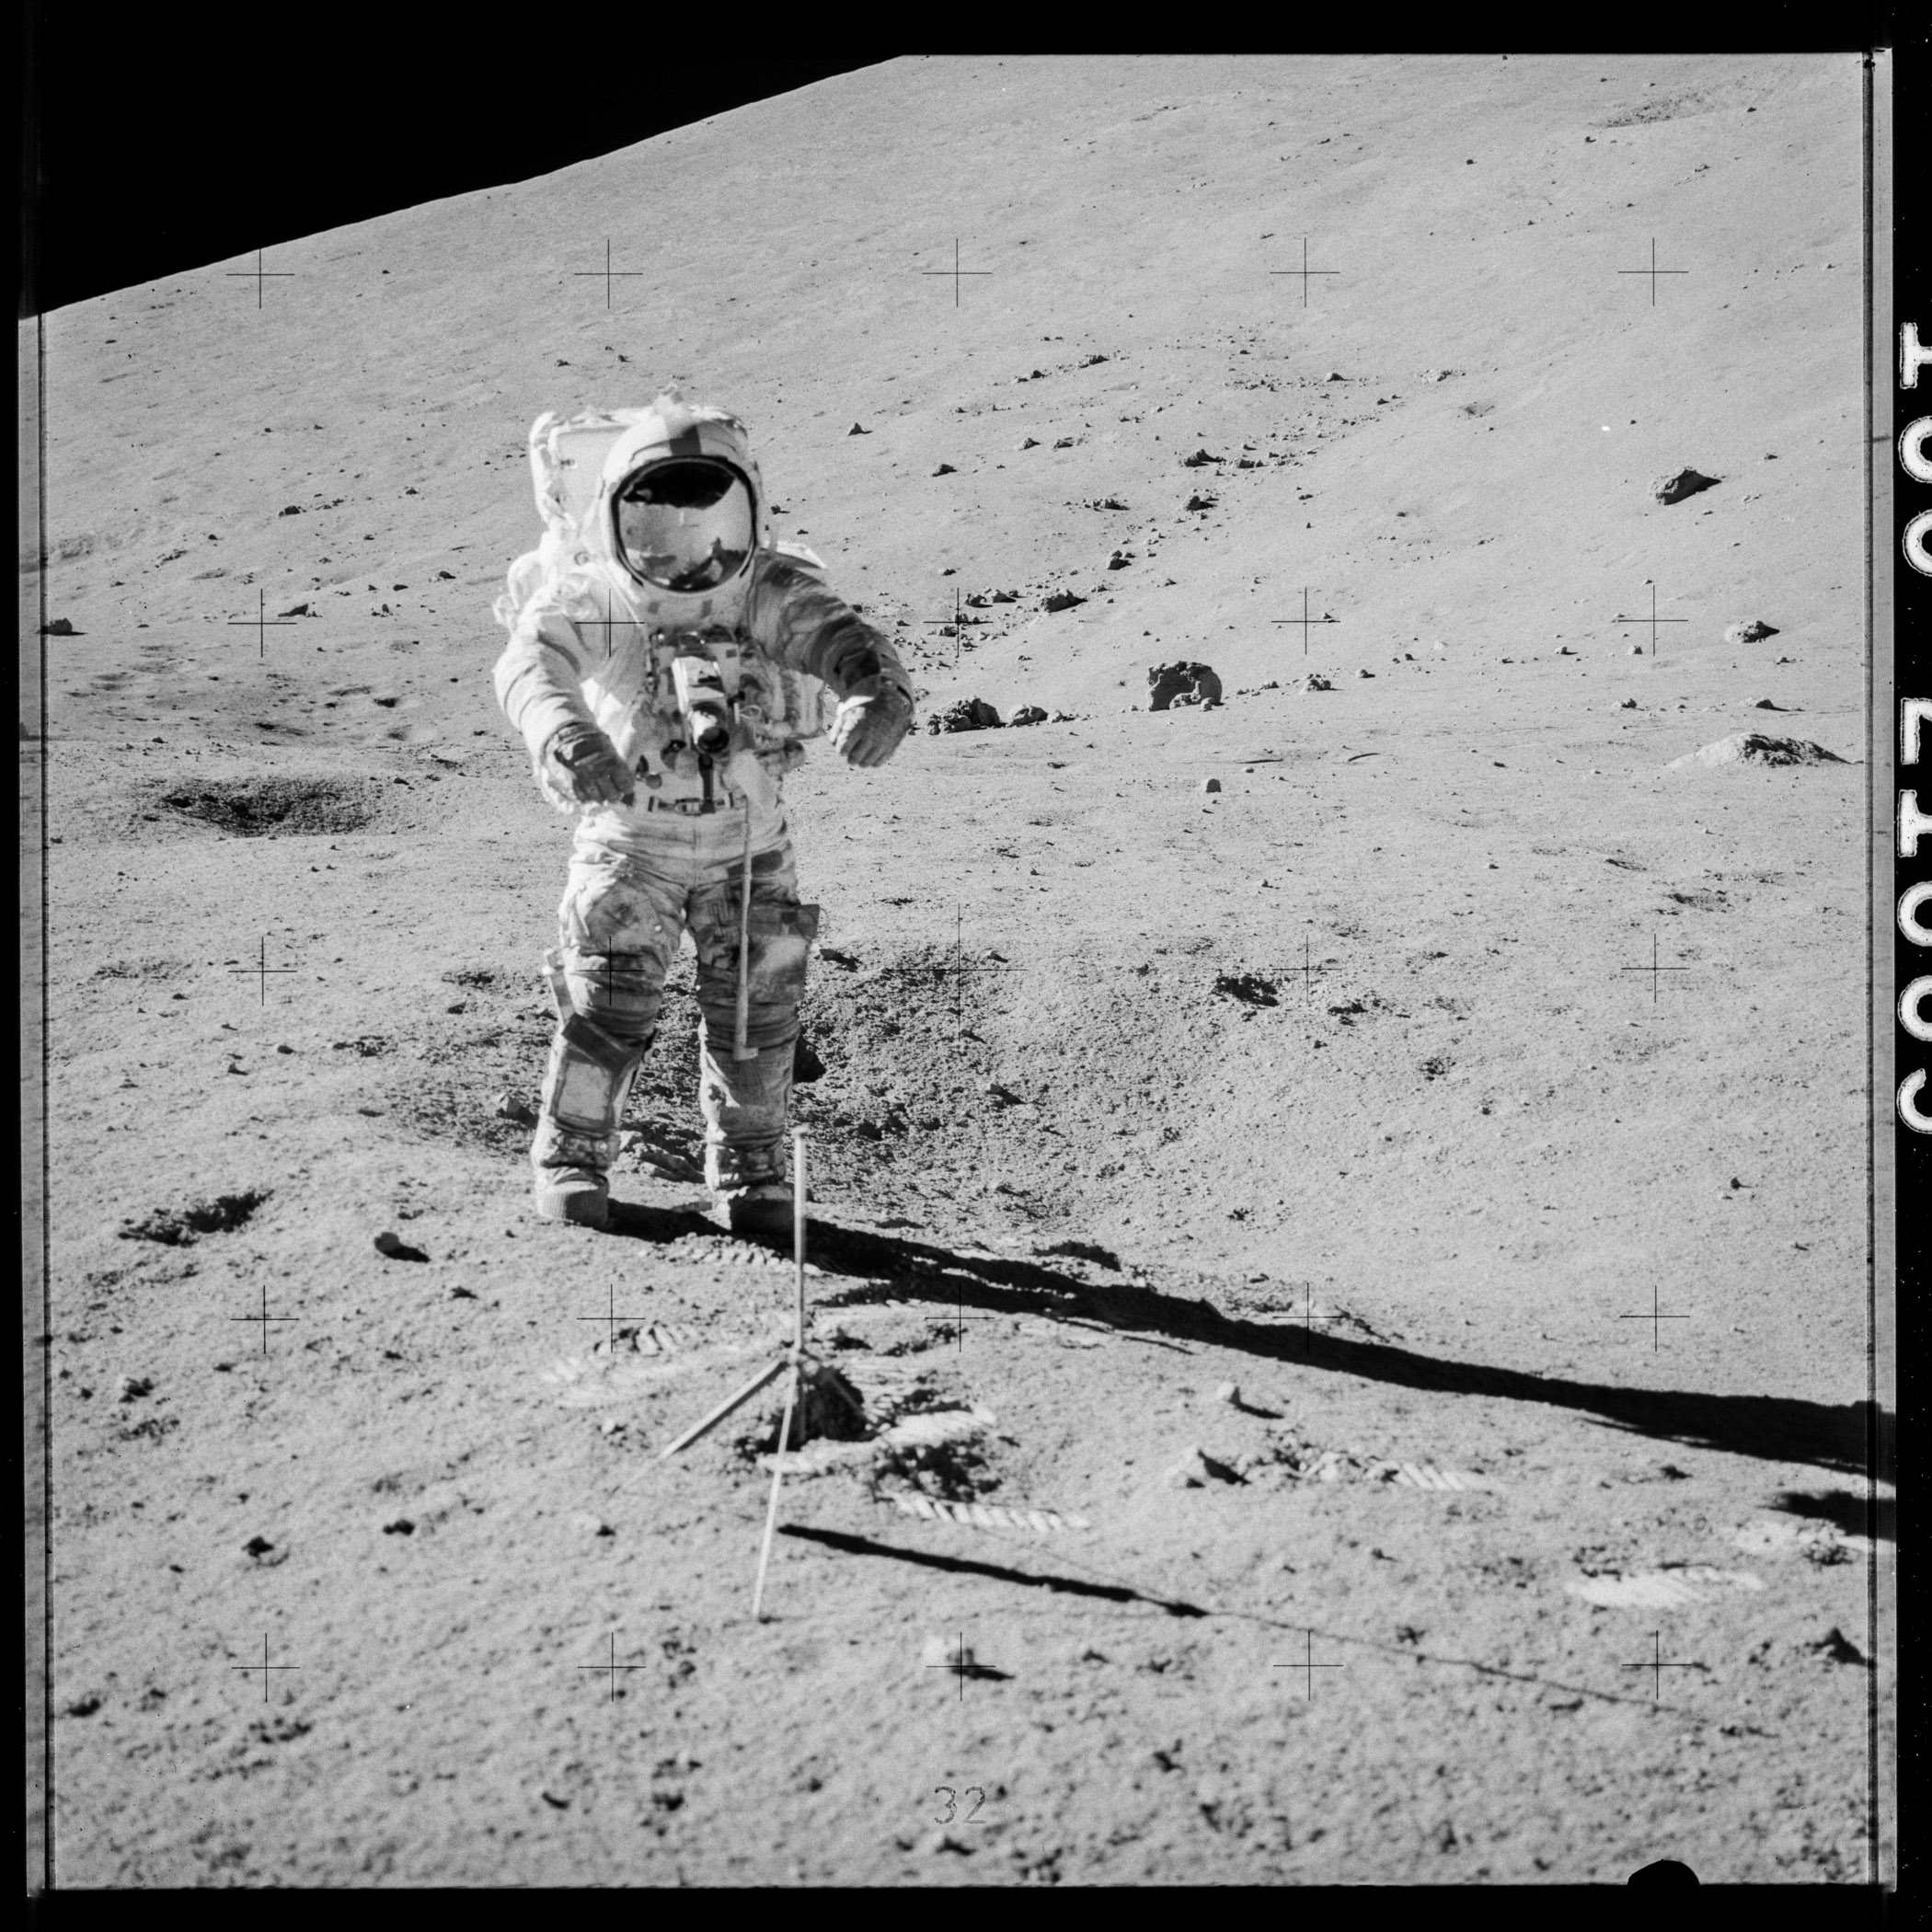 Précautions maximales pour découvrir les échantillons lunaires d'Apollo 17